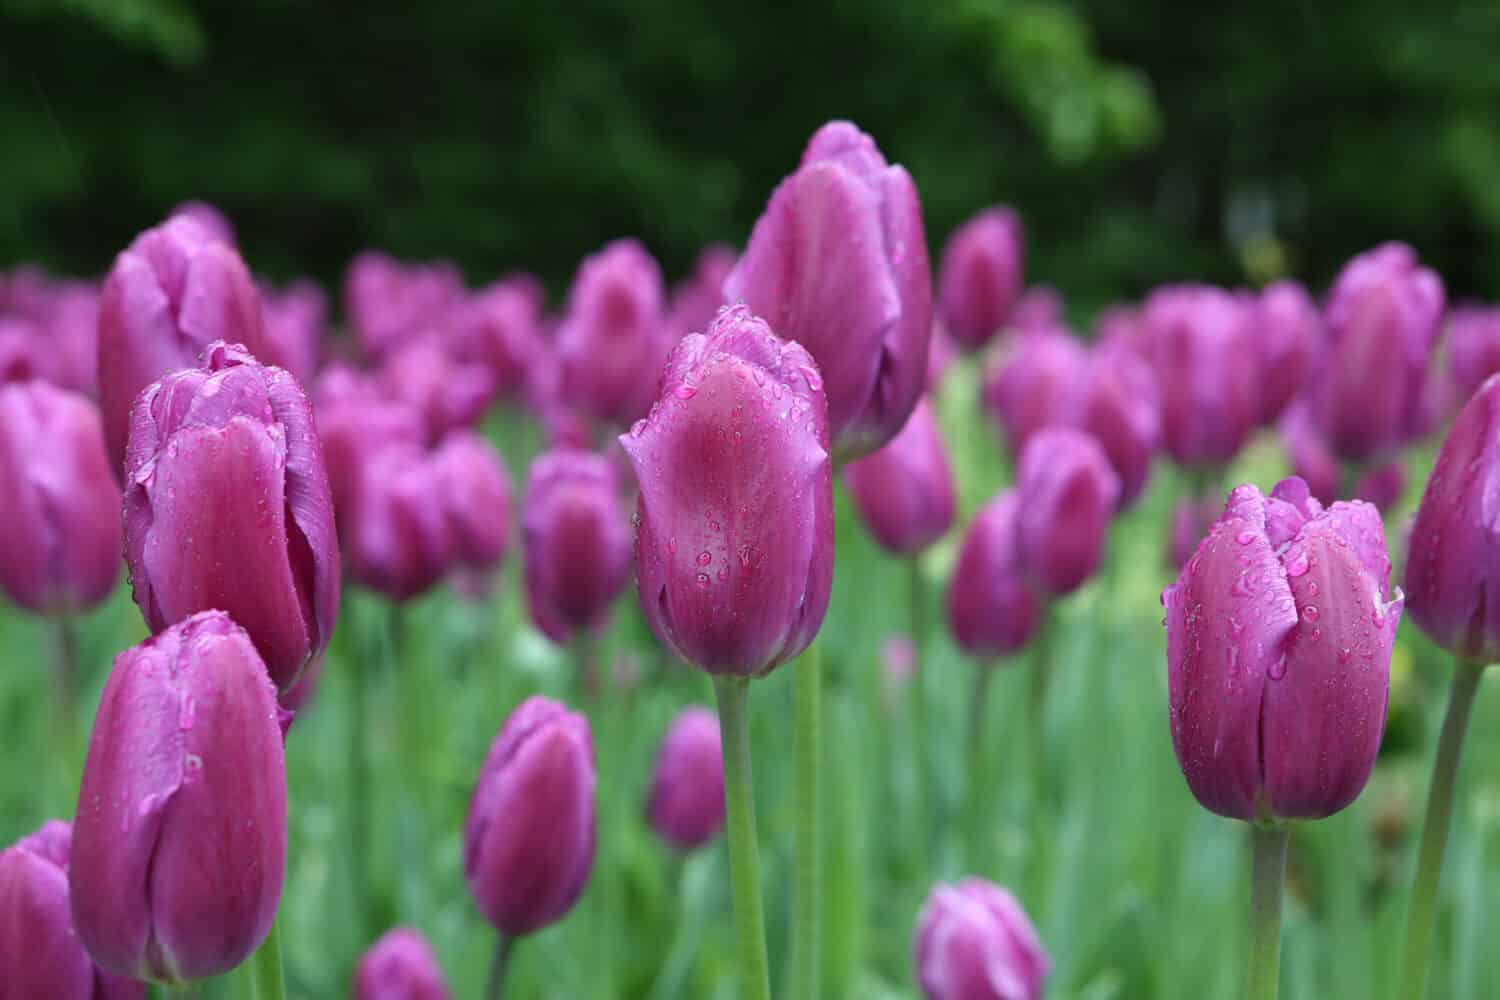 Molti tulipani viola nel parco.  Giardino primaverile, giardinaggio.  Foto a macroistruzione dei tulipani viola.  Fiore di primavera.  Fioritura dei tulipani.  Fioritura viola.  Tulipani freschi dell'Olanda viola.  Fiori lilla dopo la pioggia con gocce di pioggia